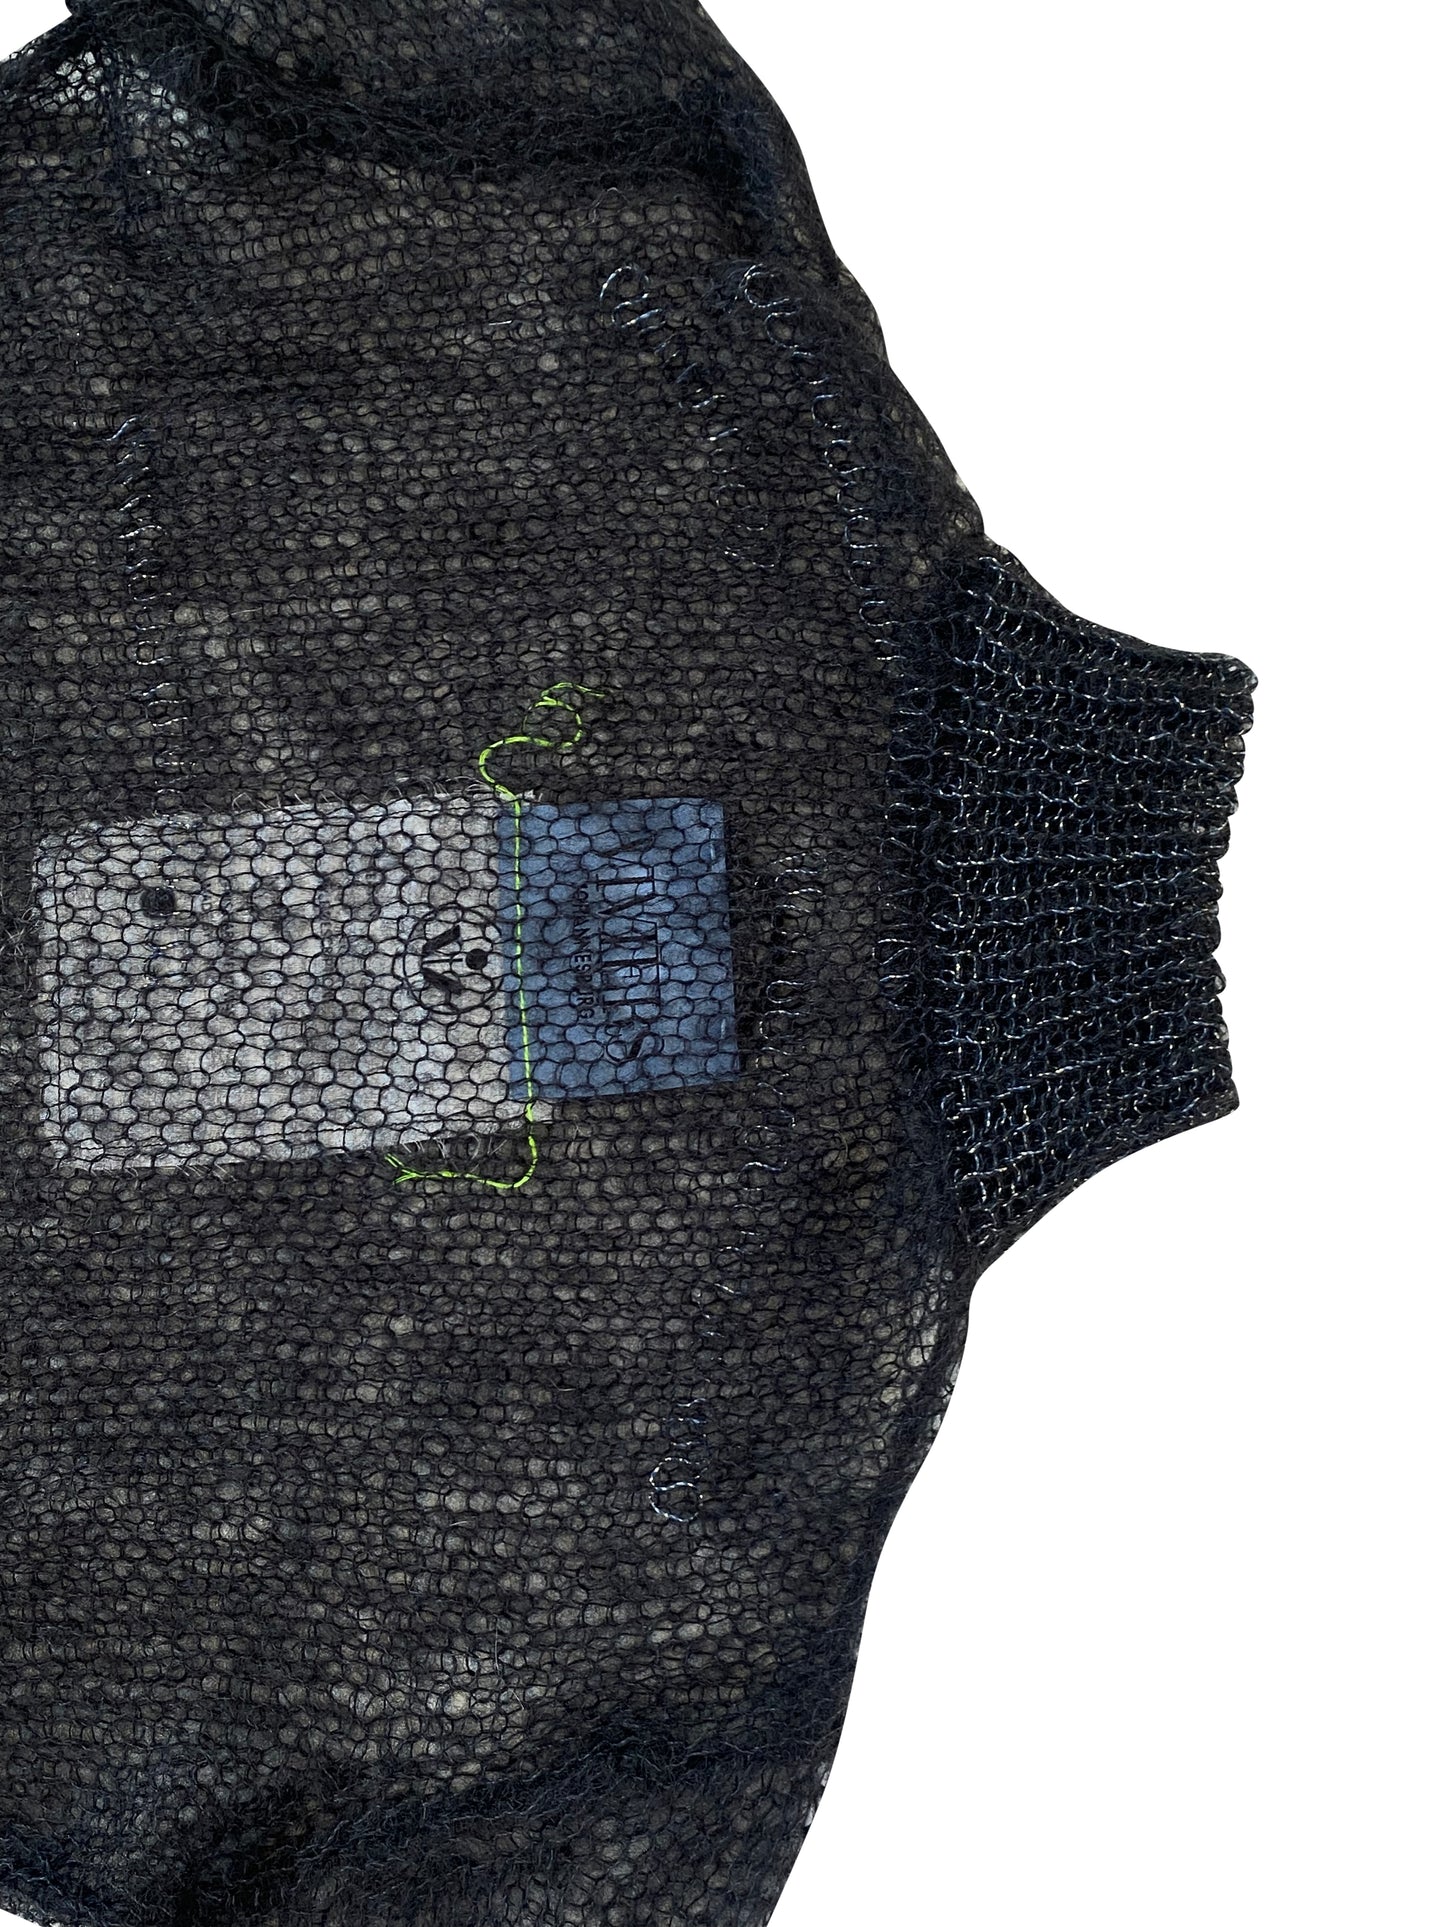 Black & Bronze Artisanal Mohair knitter turtleneck top